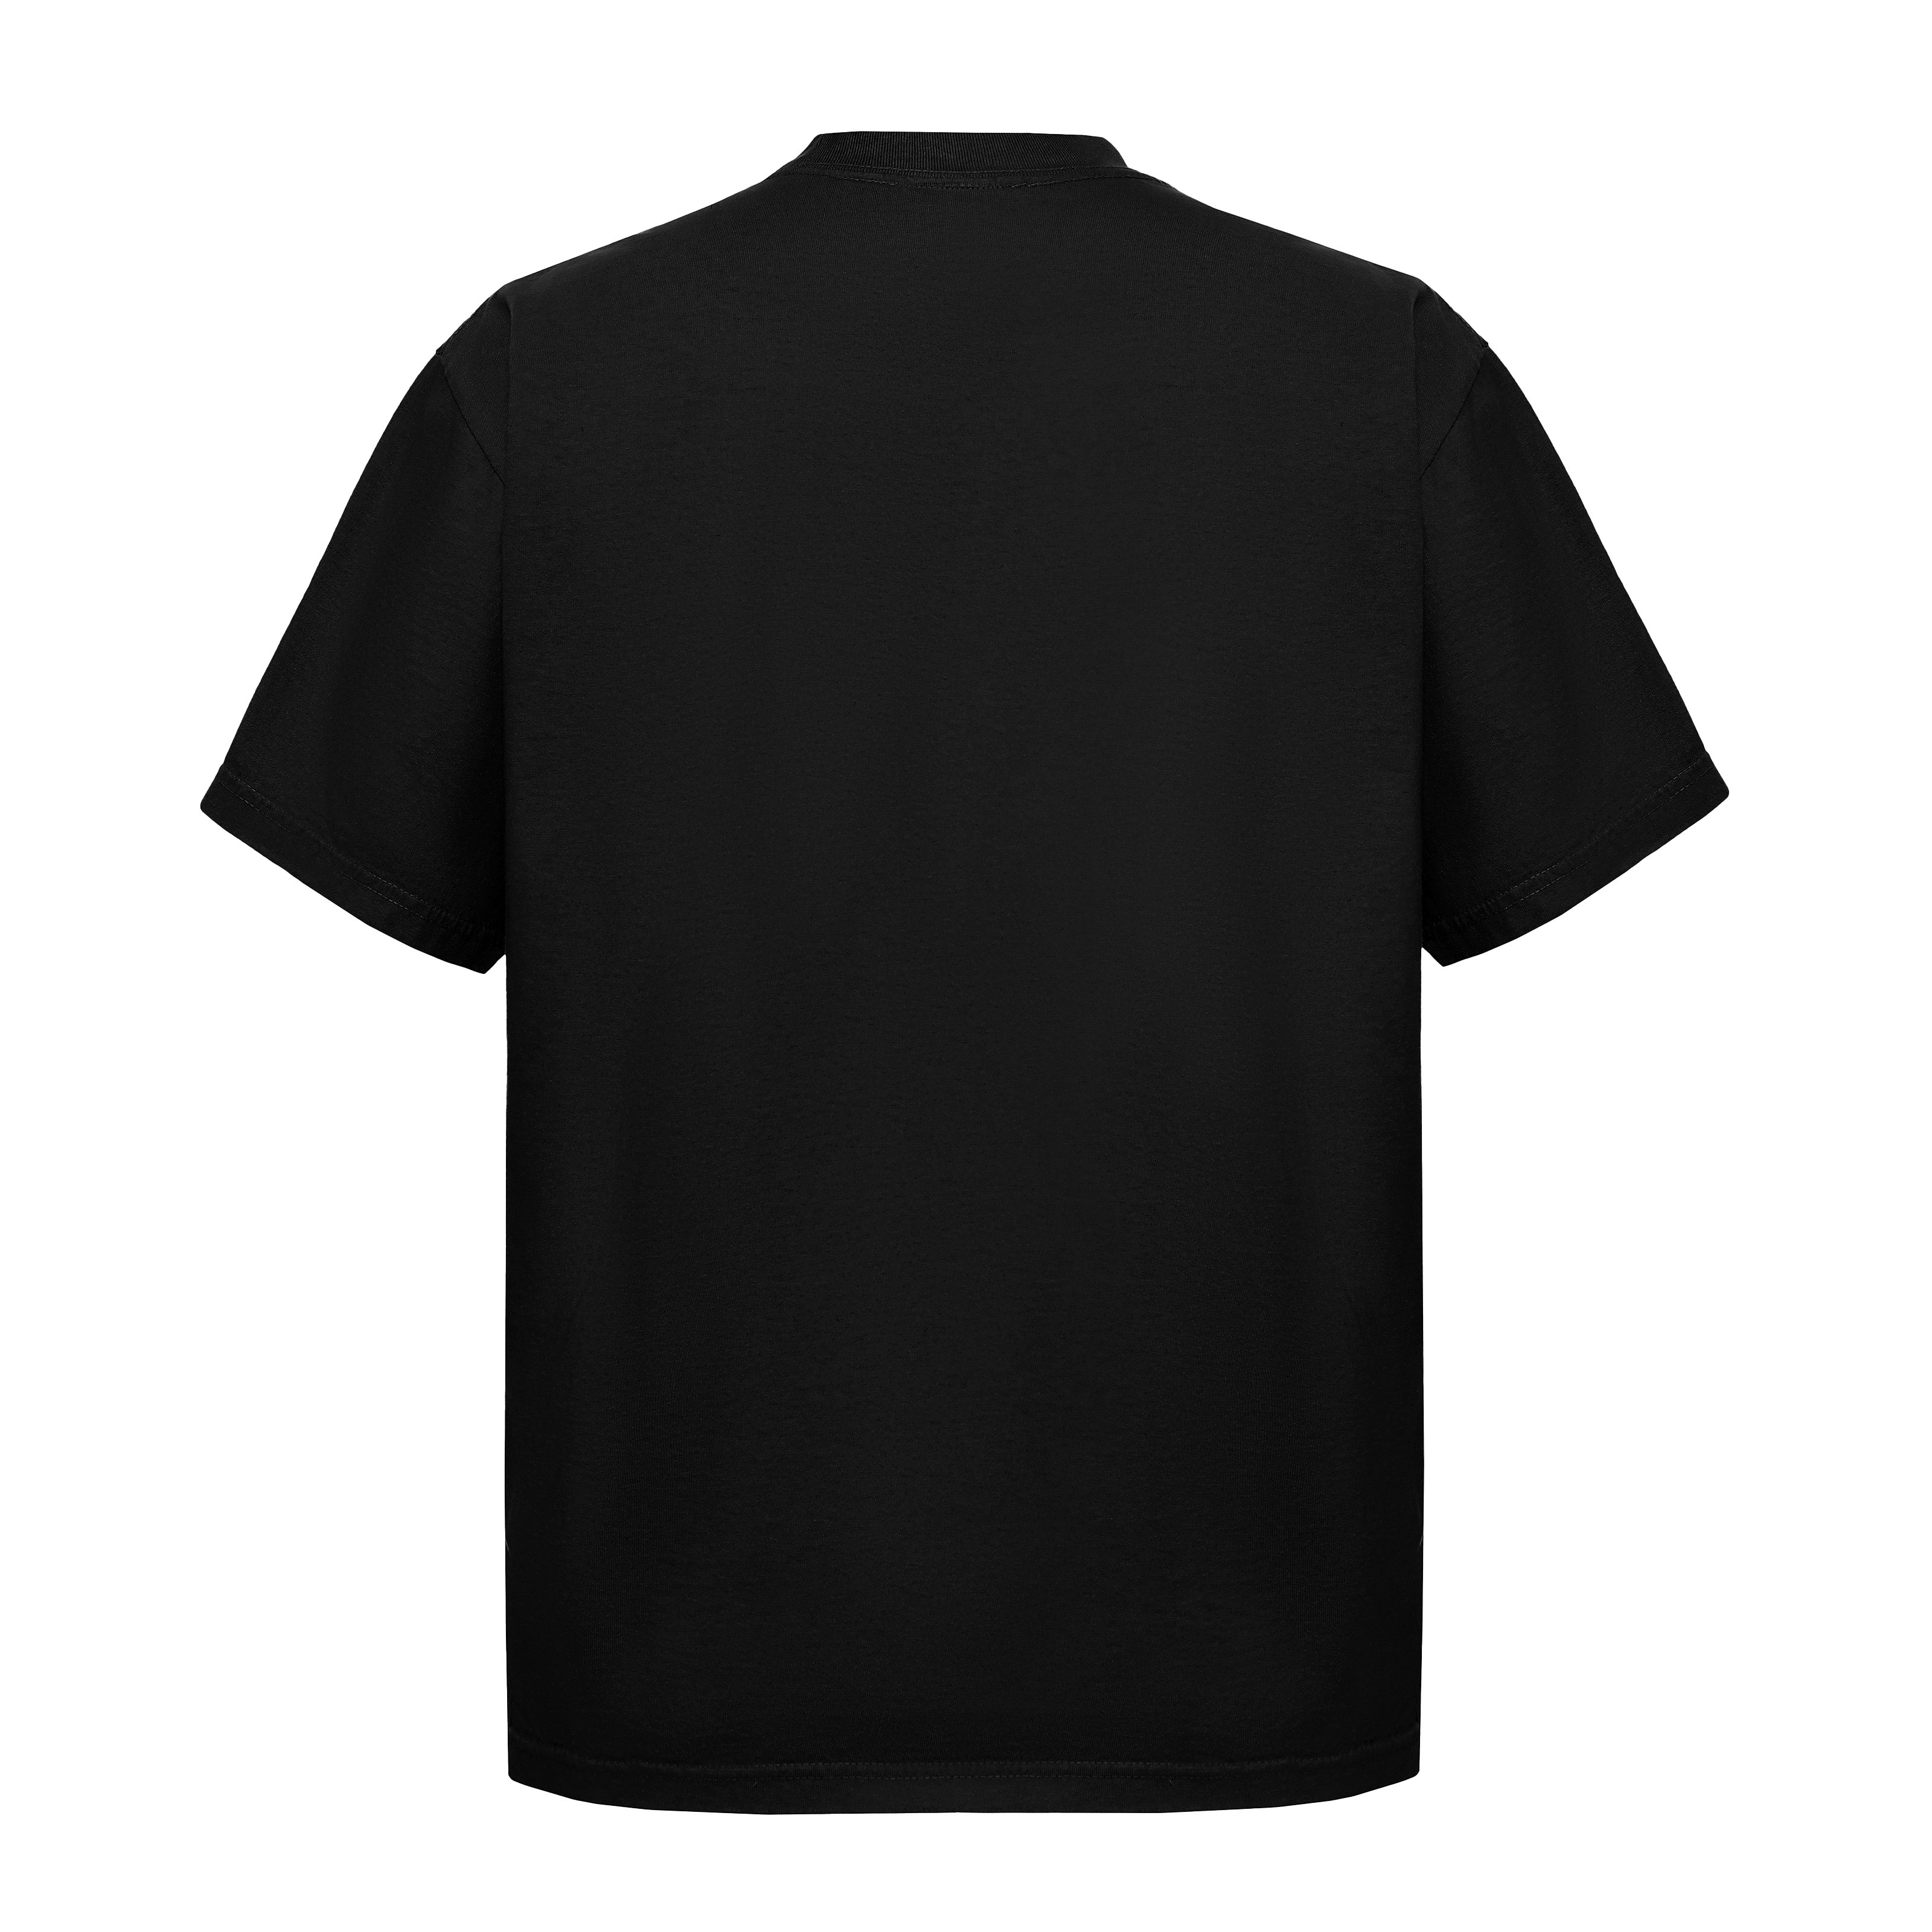 Garment Dye T-Shirt - Standard Size - Black